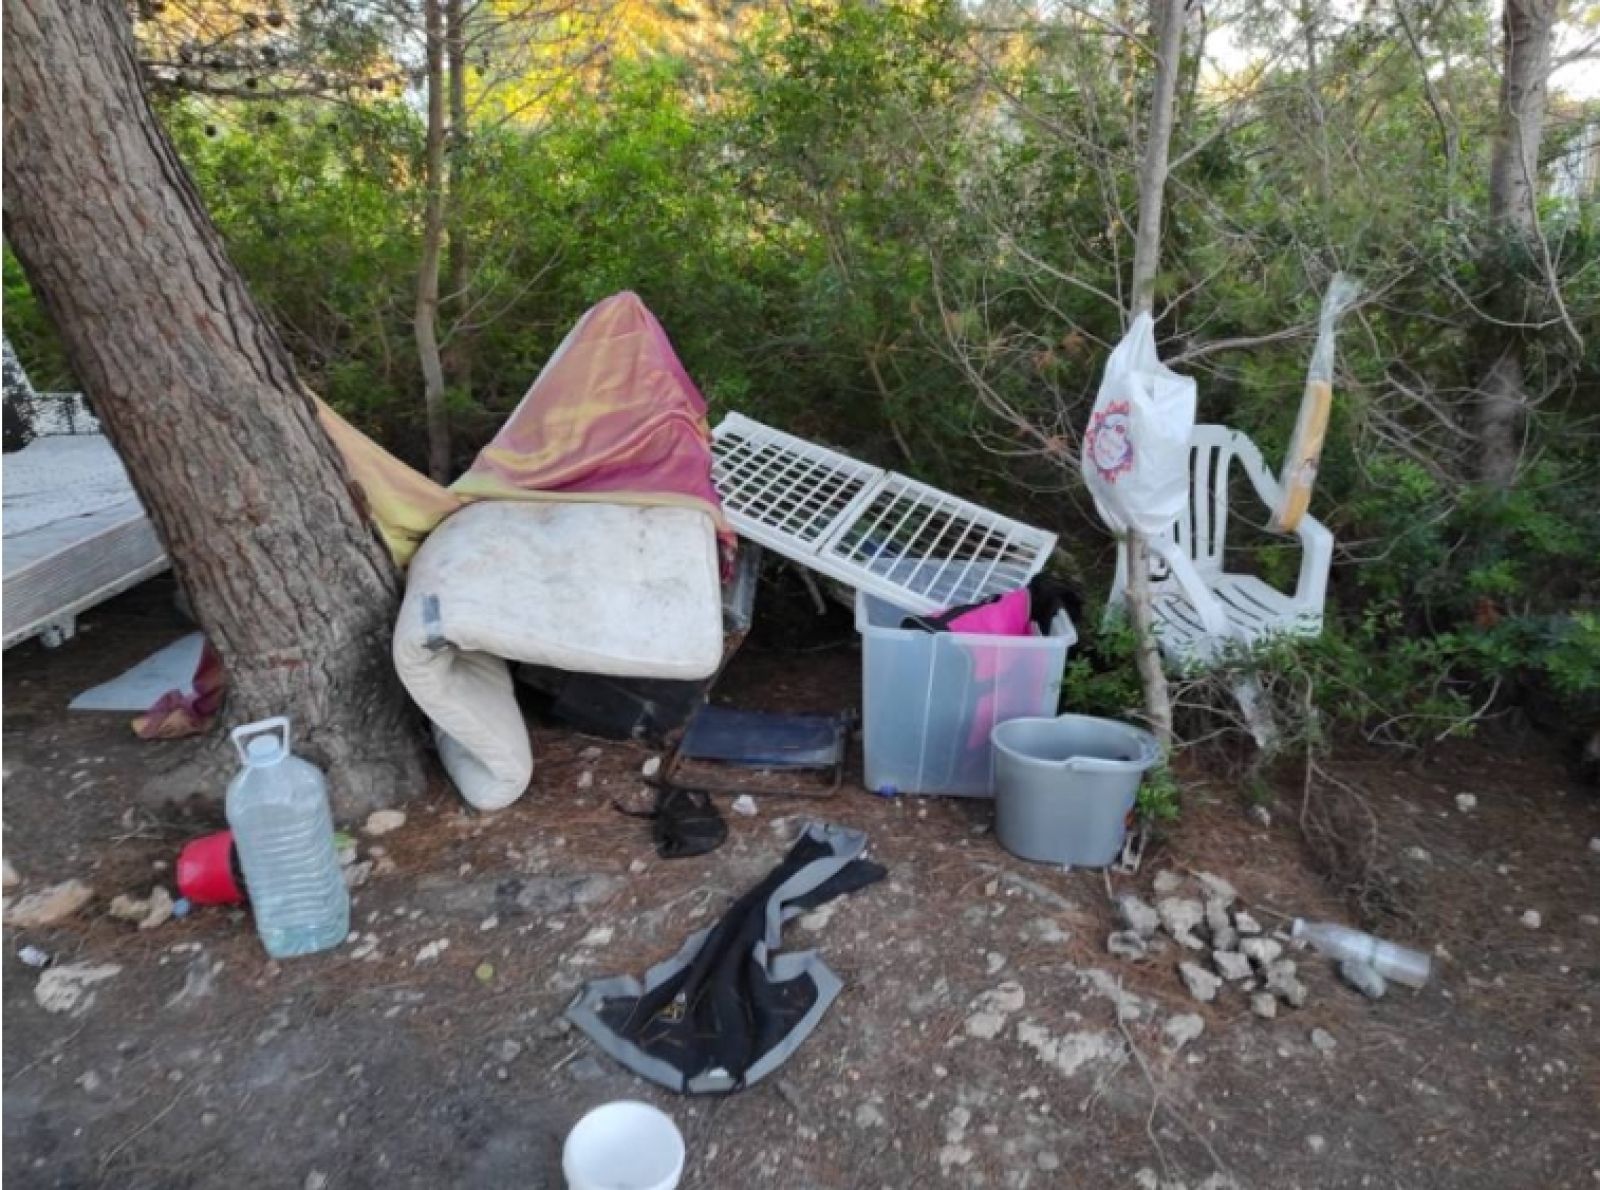 17 nuevas denuncias por acampada ilegal en tres enclaves del municipio